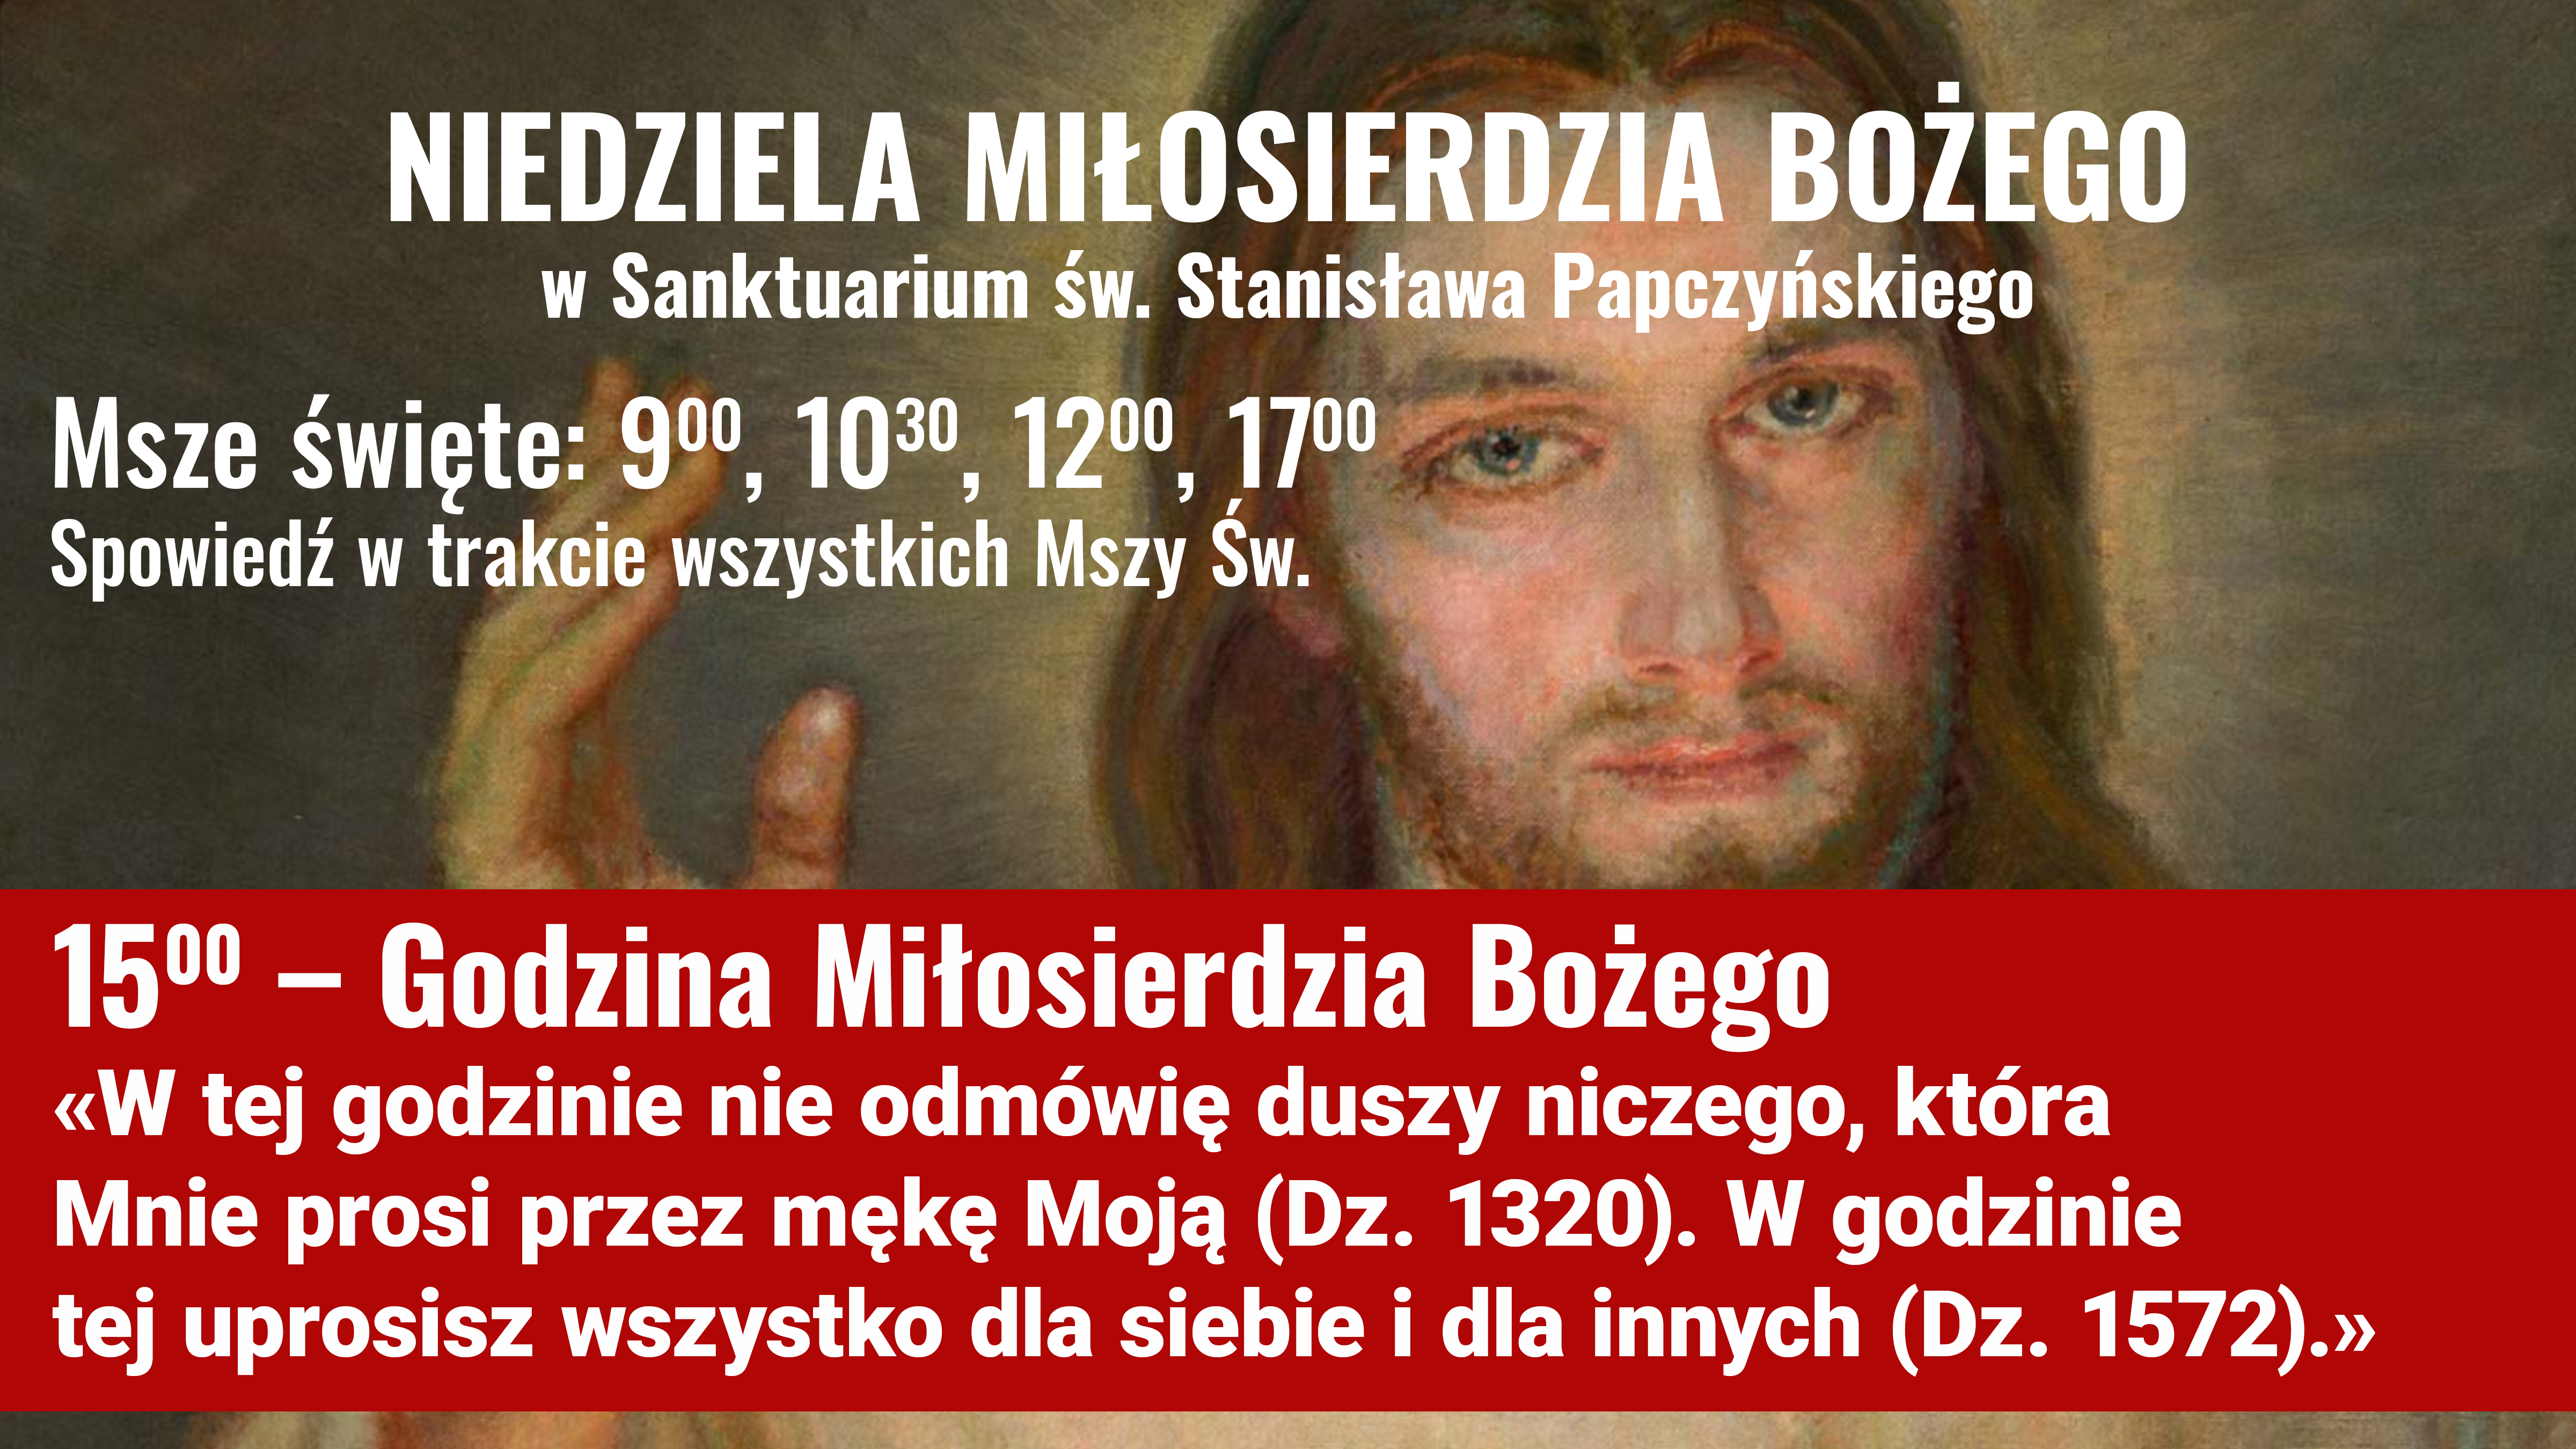 Niedziela Milosierdzia Bozego Sanktuarium Sw O Stanislawa Papczynskiego